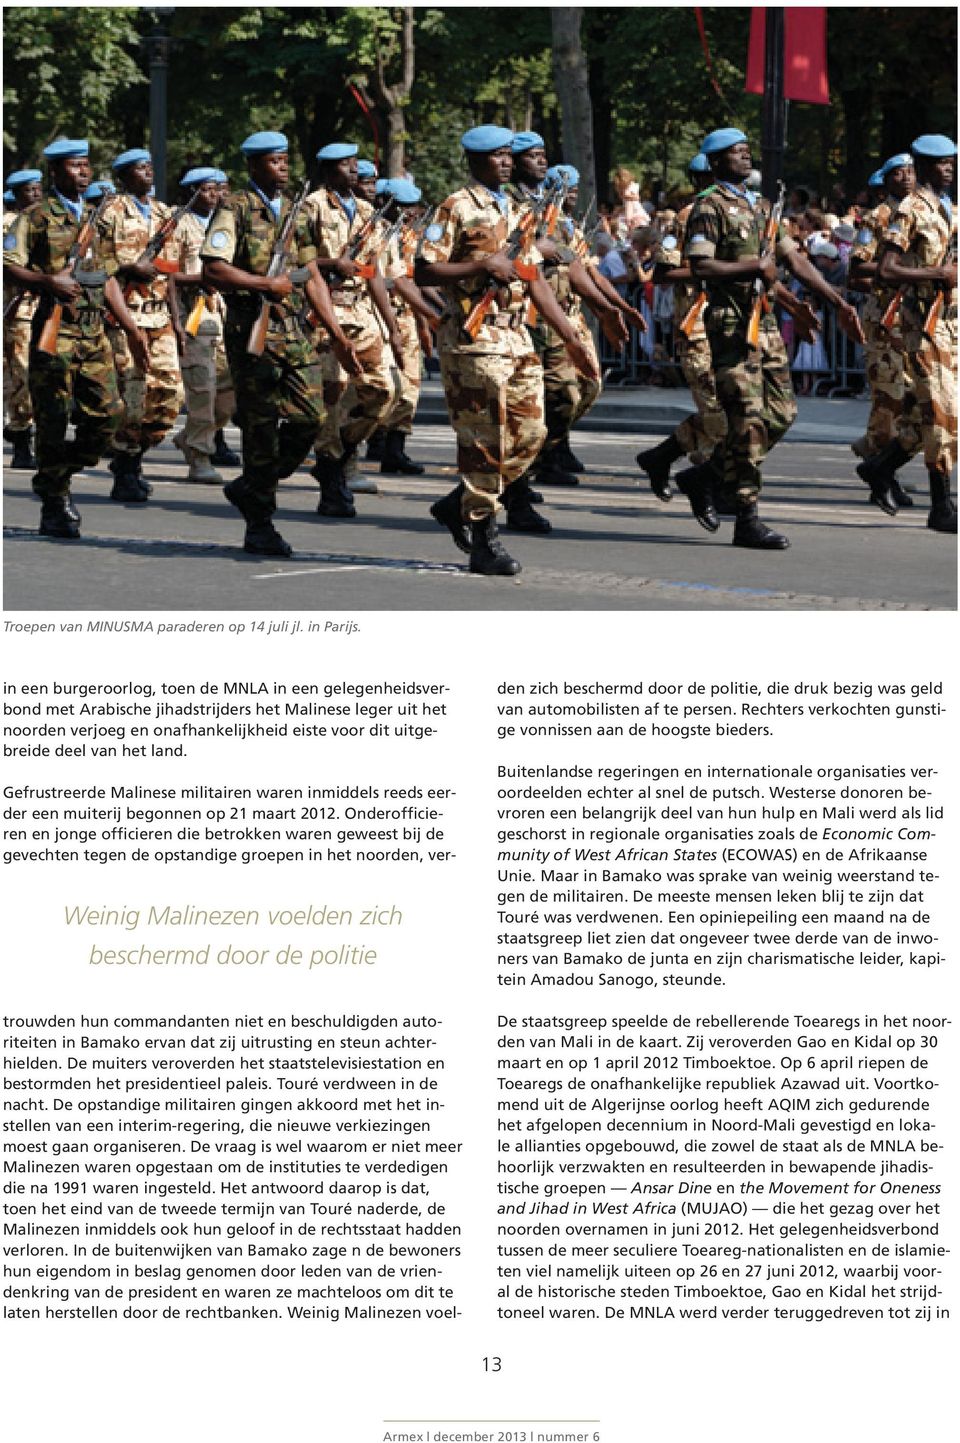 Weinig Malinezen voelden zich beschermd door de politie Gefrustreerde Malinese militairen waren inmiddels reeds eerder een muiterij begonnen op 21 maart 2012.